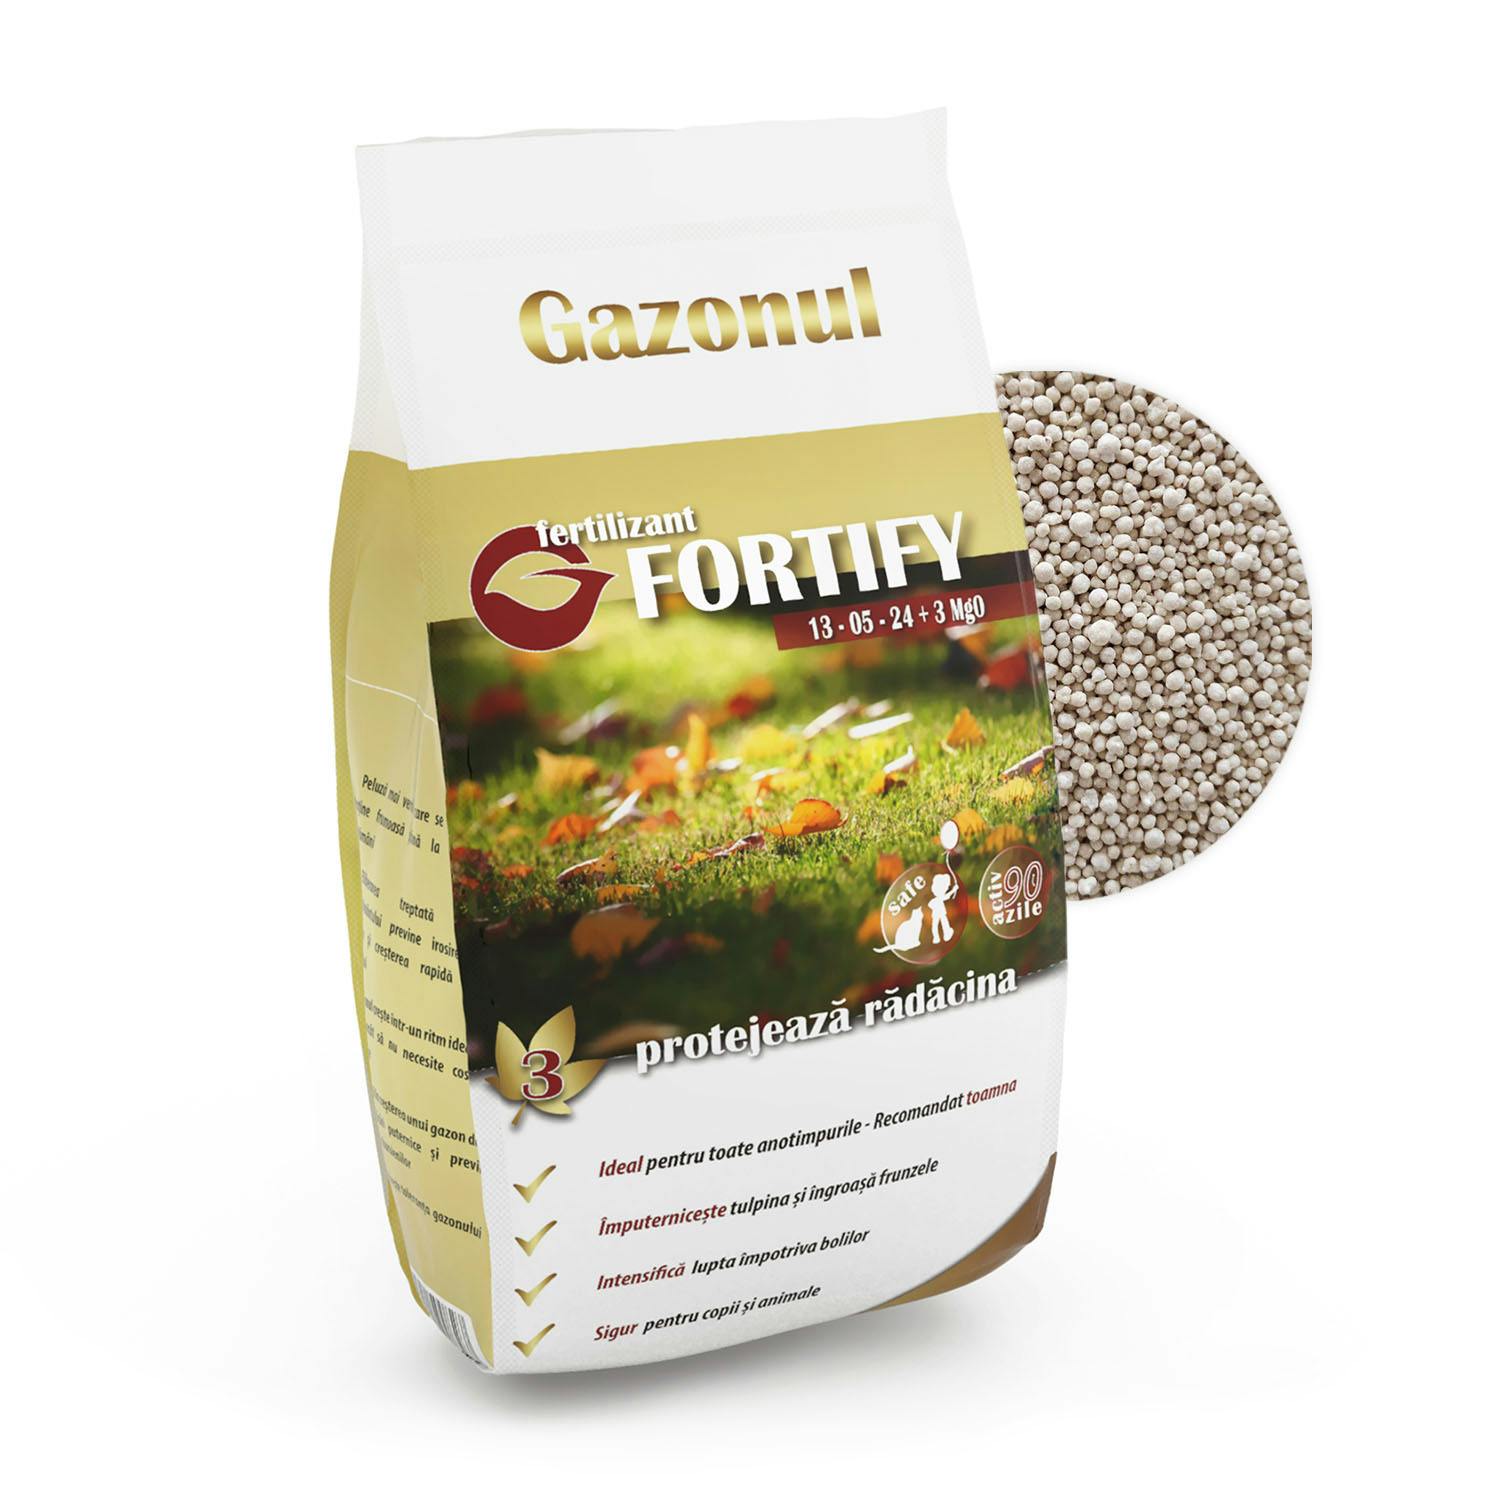 Fertilizant Fortify